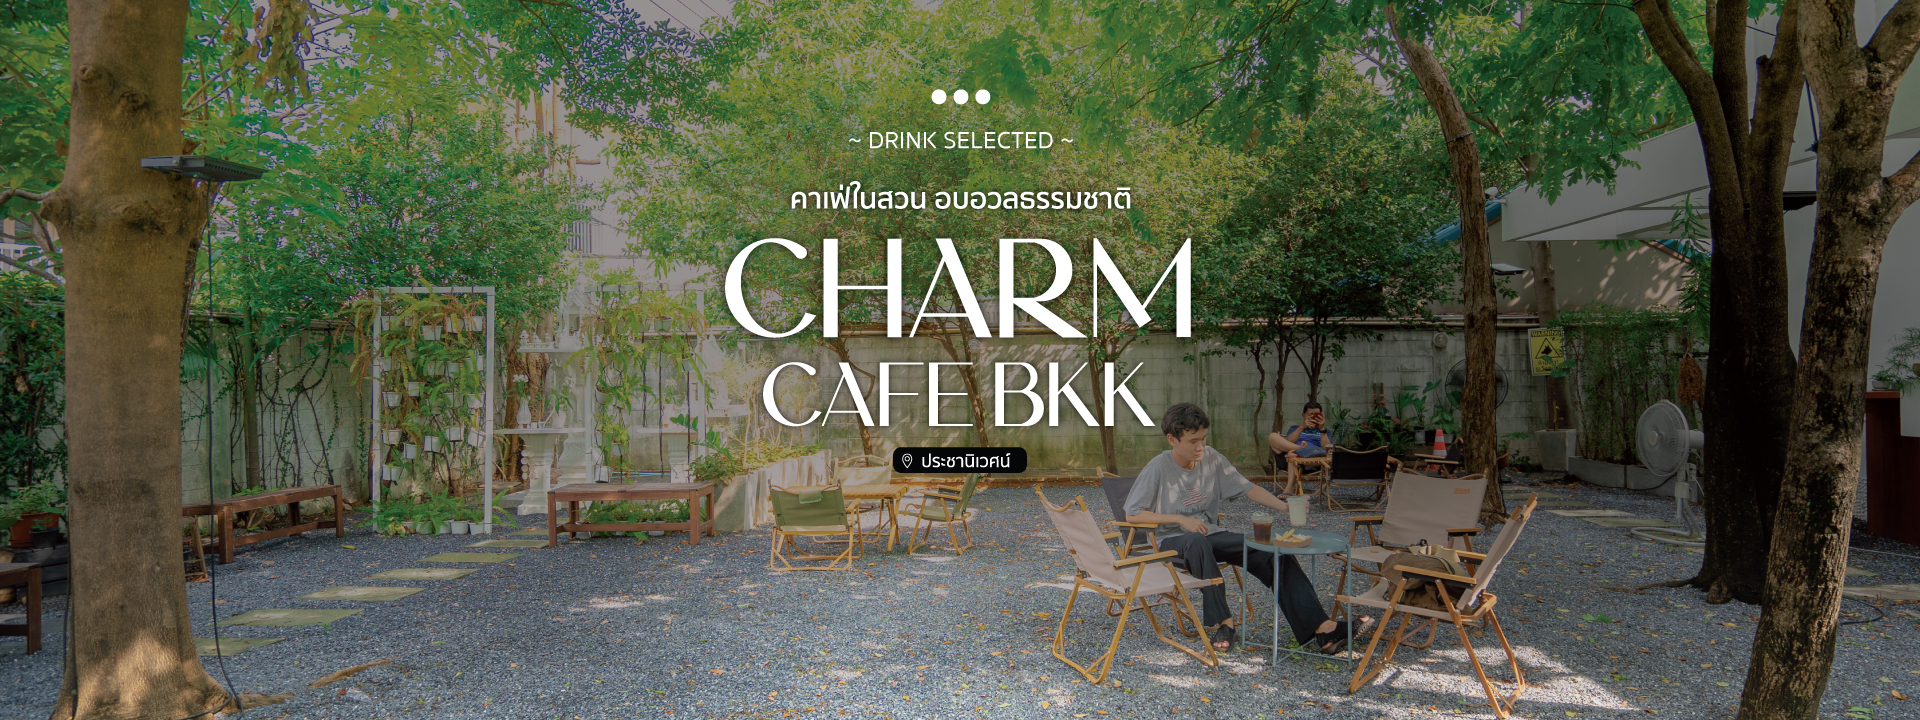 Charm Cafe BKK คาเฟ่ในสวน อบอวลธรรมชาติ